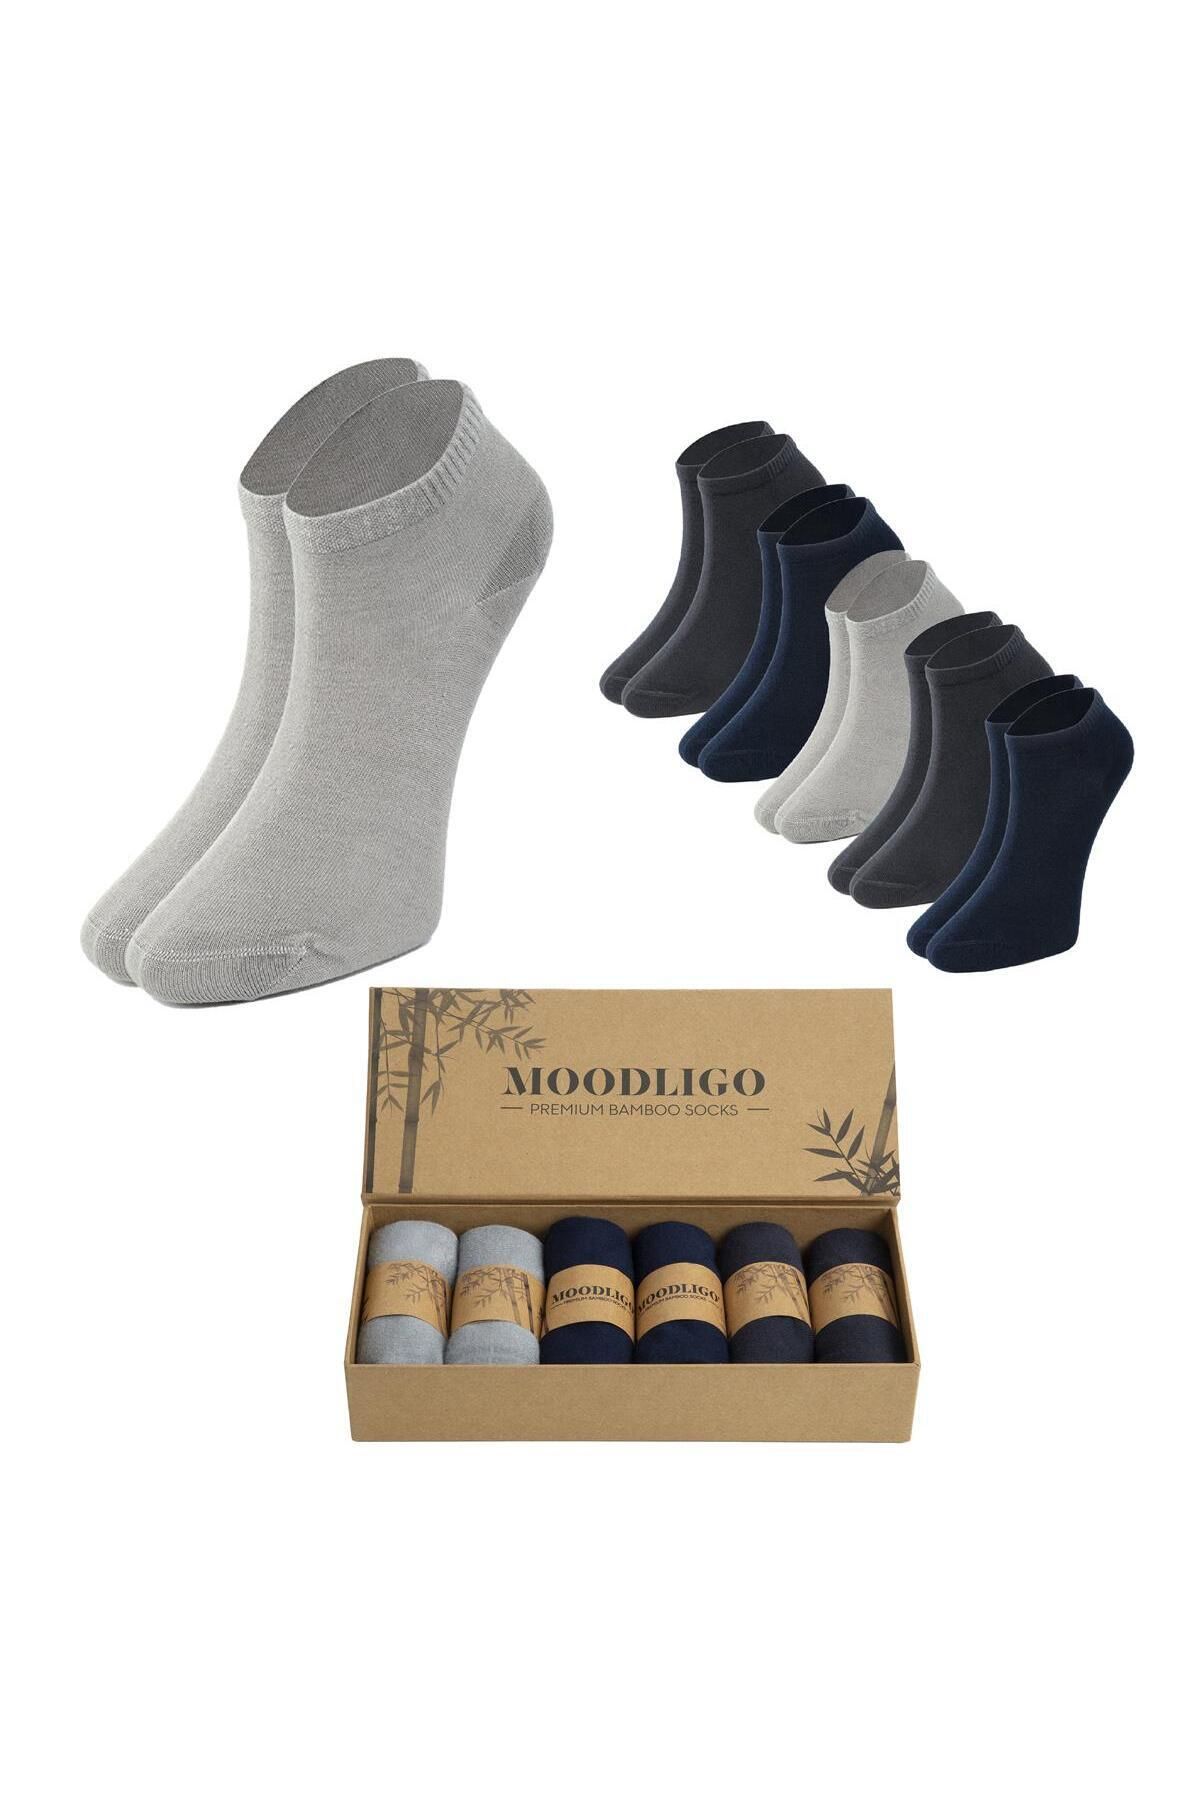 Moodligo Kadın 6'lı Premium Bambu Patik Çorap - 2 Gri 2 Füme 2 Lacivert - Kutulu